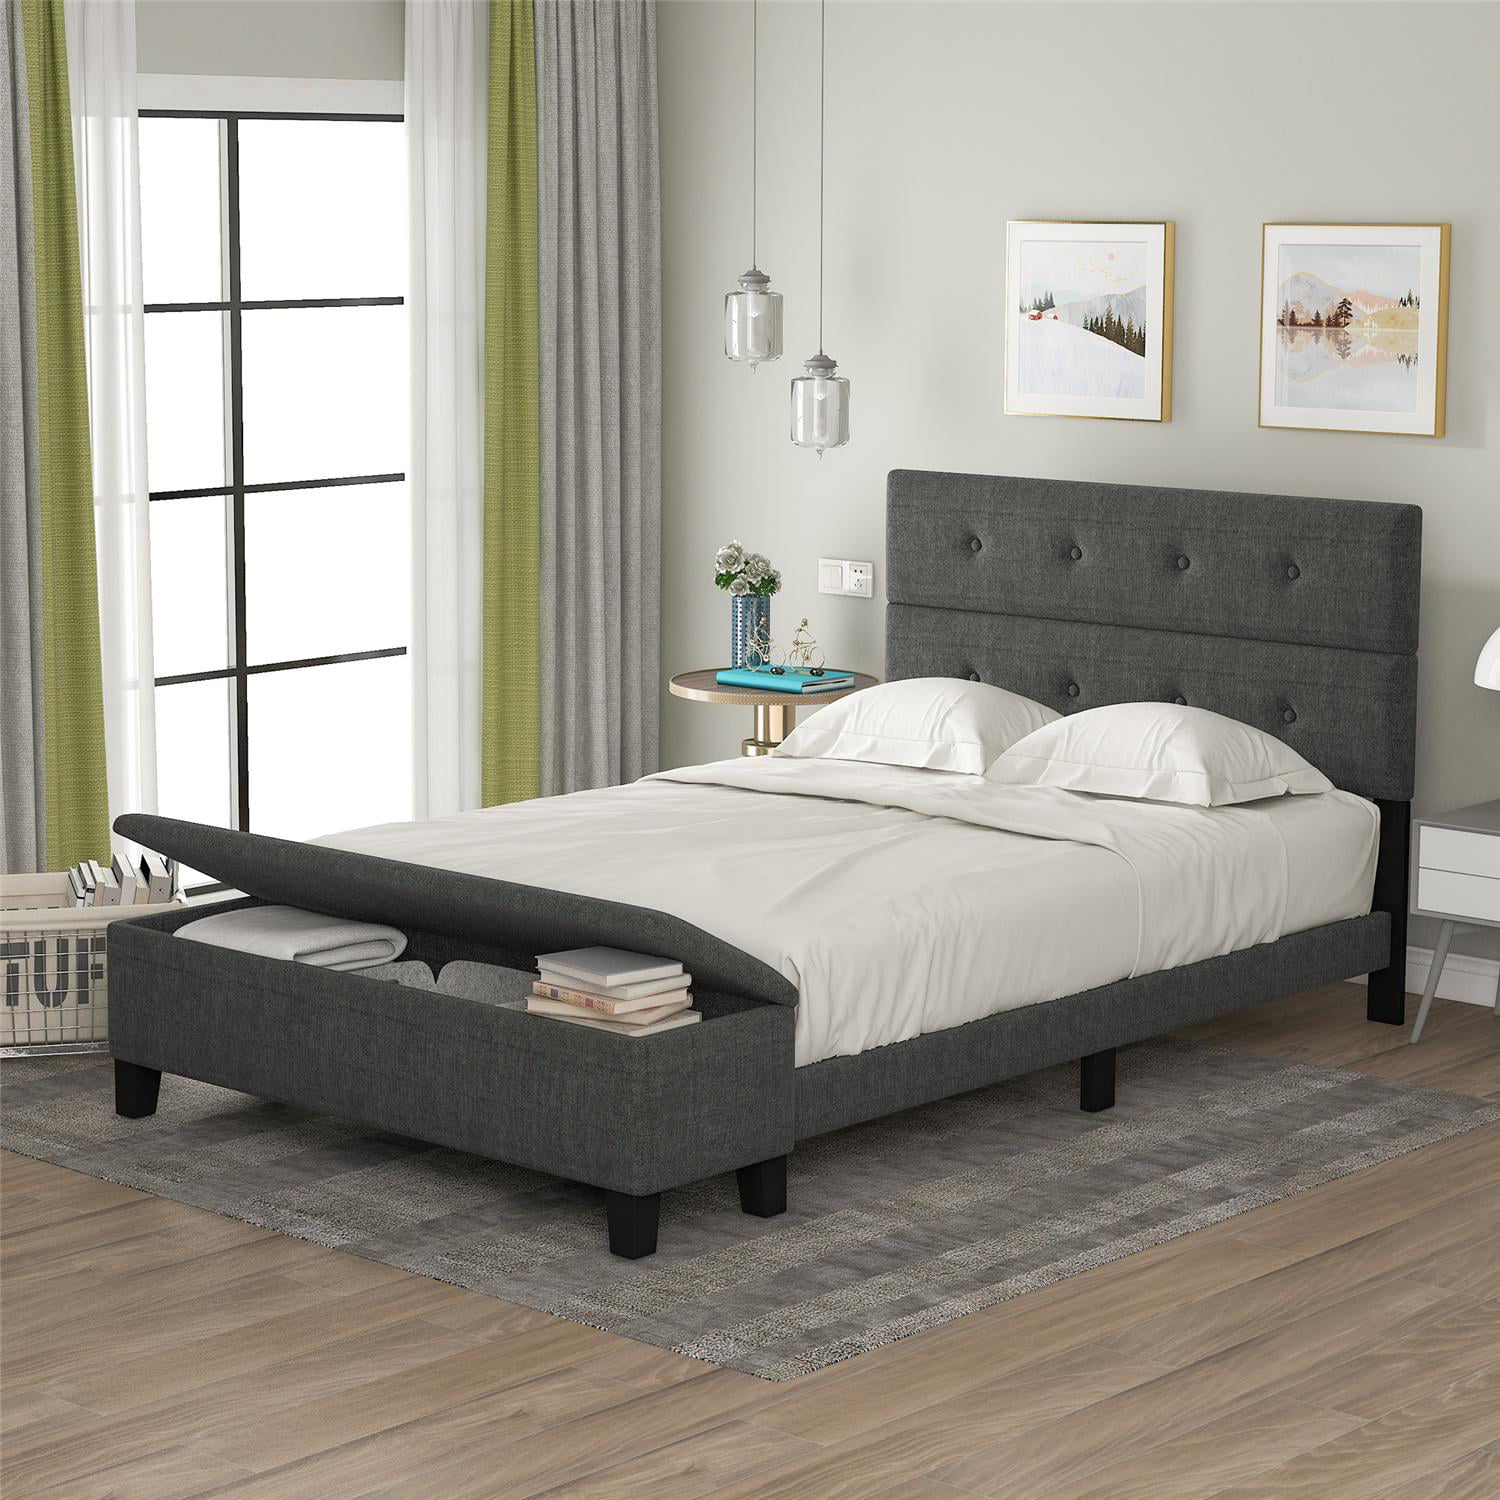 Full Size Upholstered Platform Bed Frame with Storage Case, Modern